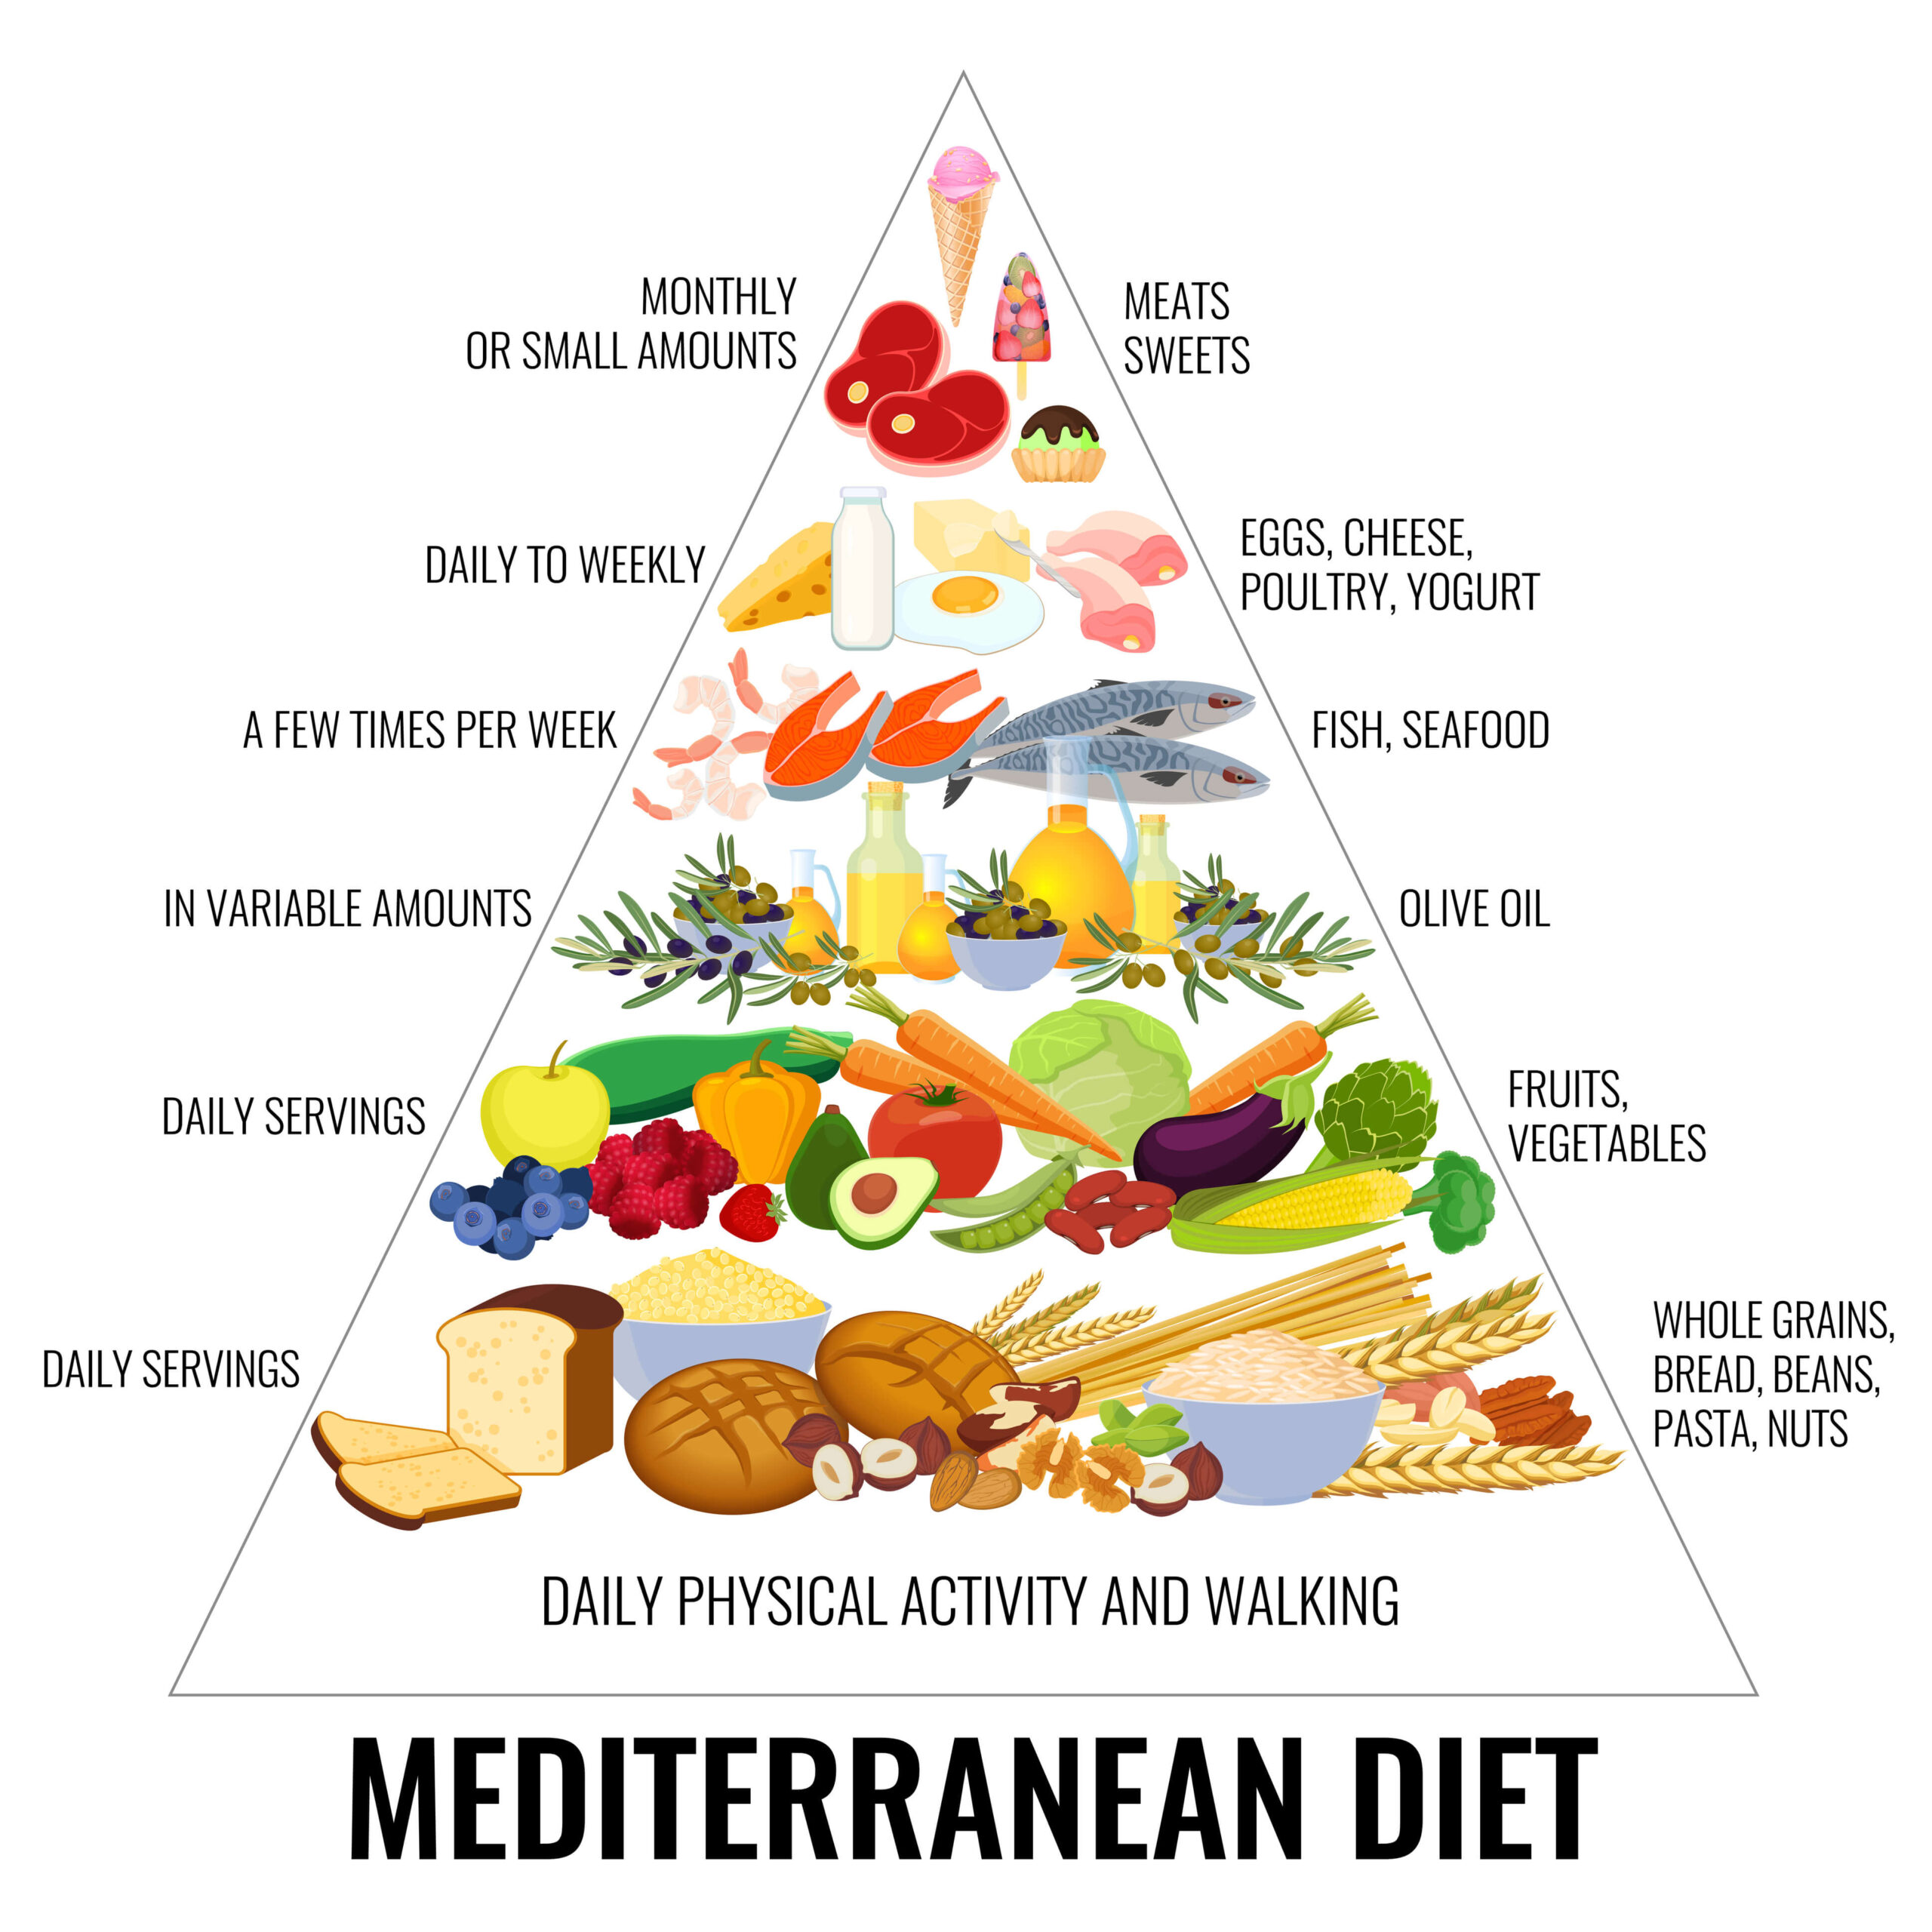 The Mediterranean Diet Pyramid.